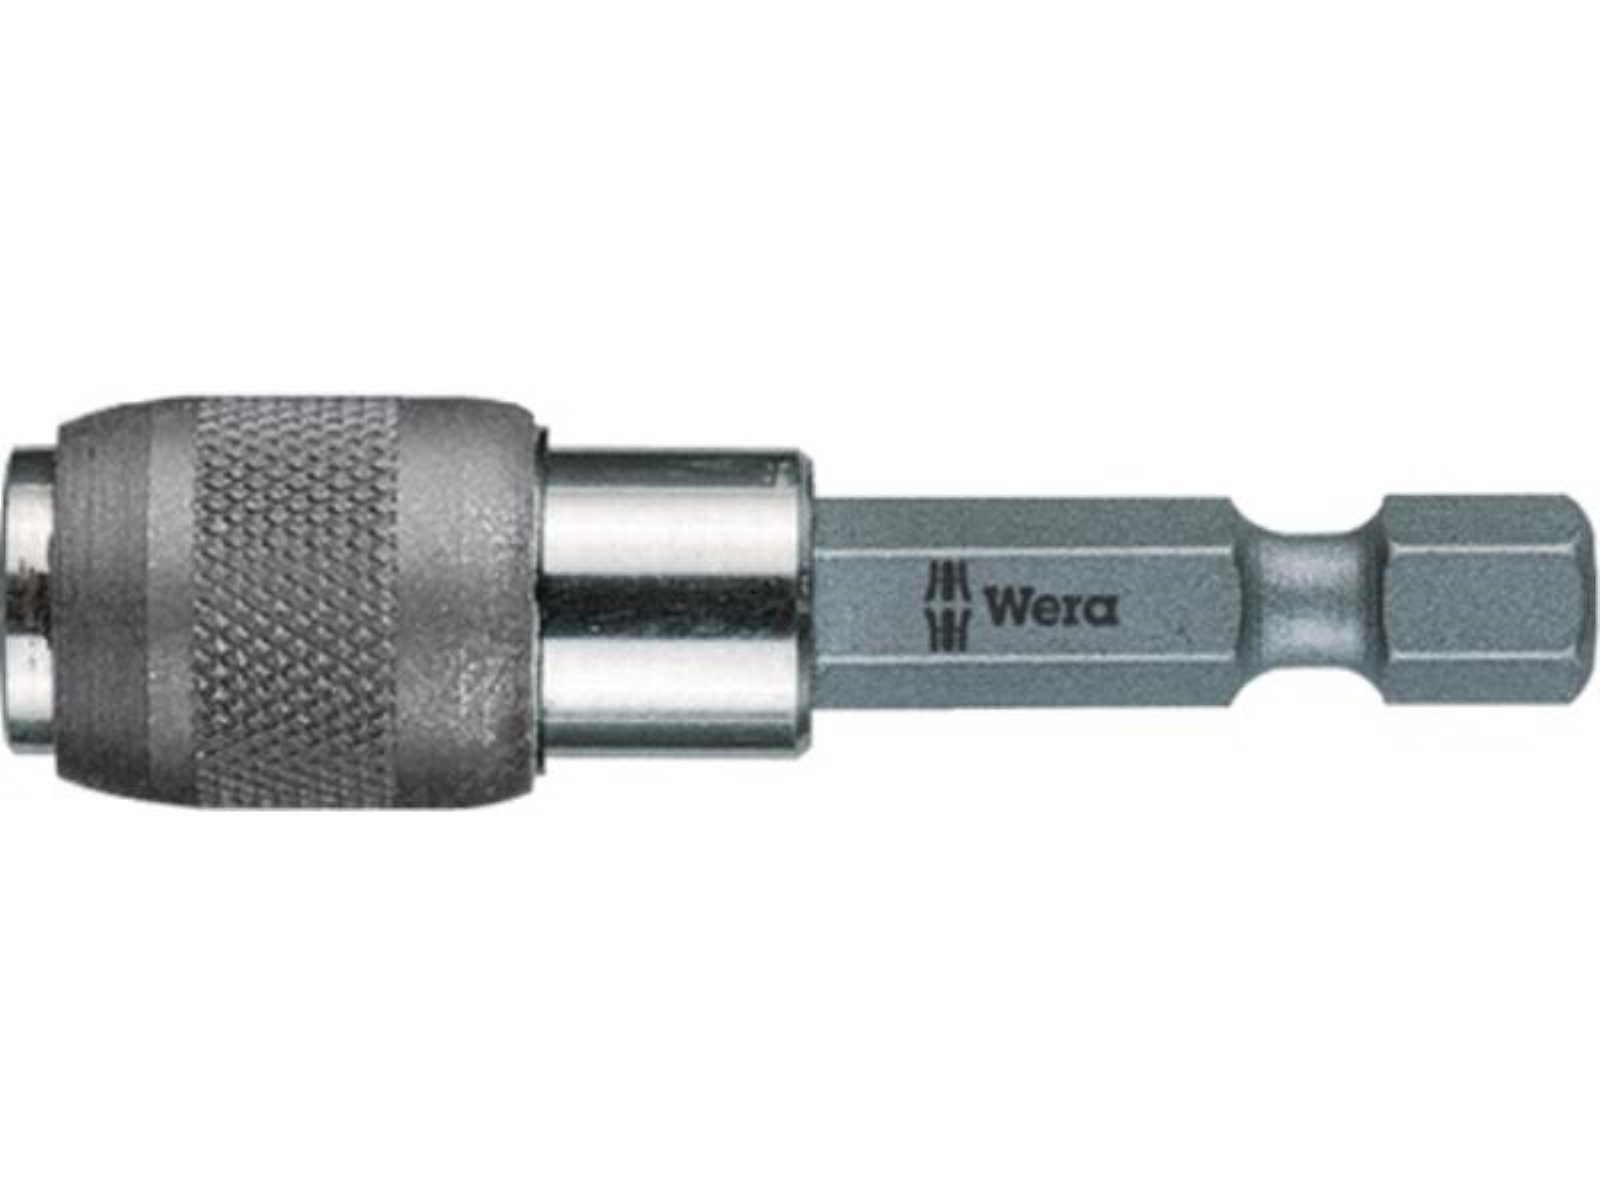 Wera Werkzeugset Bithalter 895/4/1 K 1/4 Zoll F 6,3 1/4 Zoll C 6,3 SWF L.52mm WERA mit